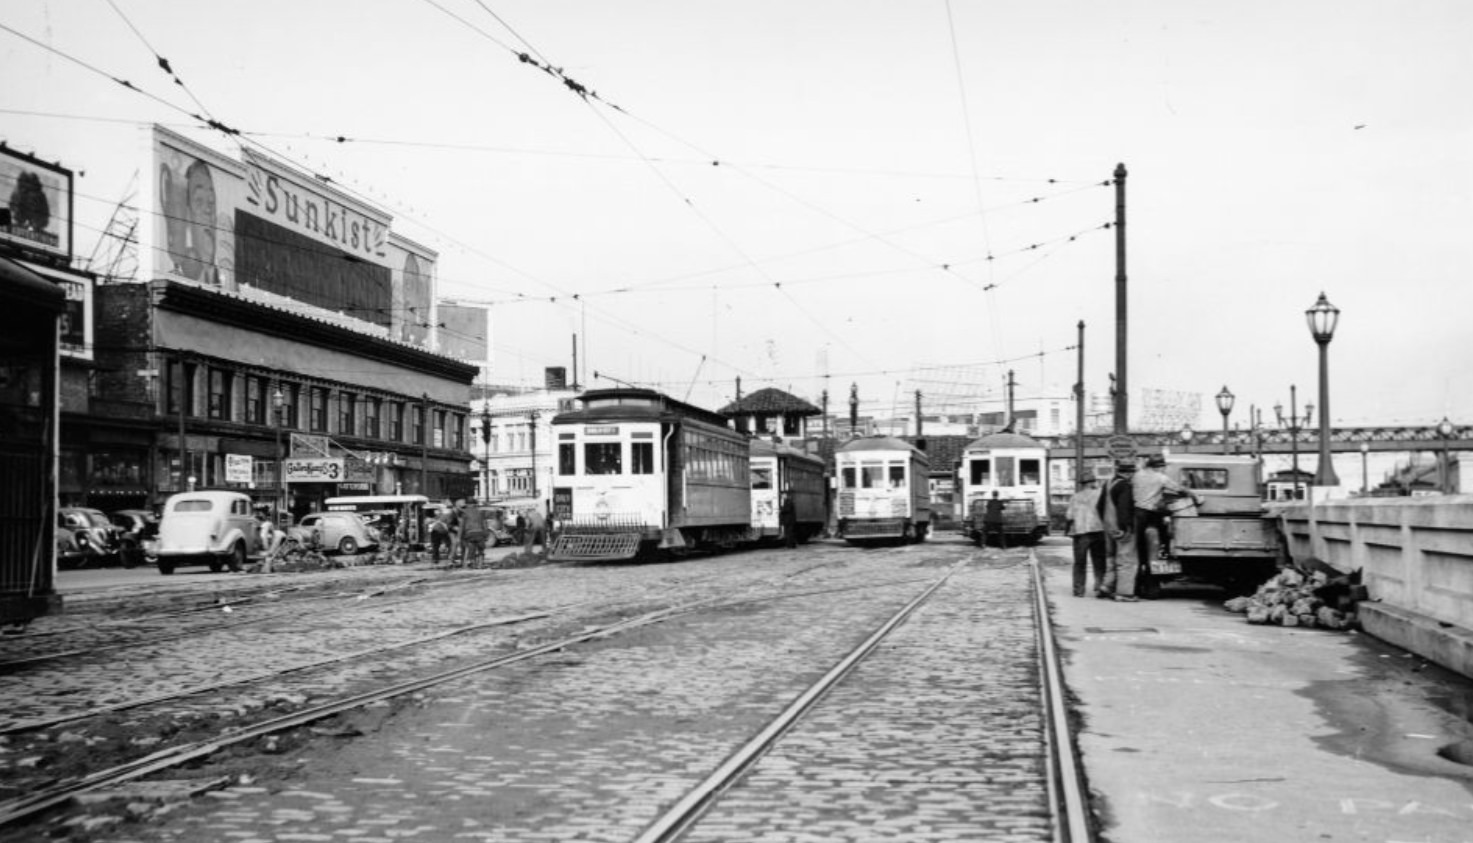 Streetcars parked at Embarcadero, 1938